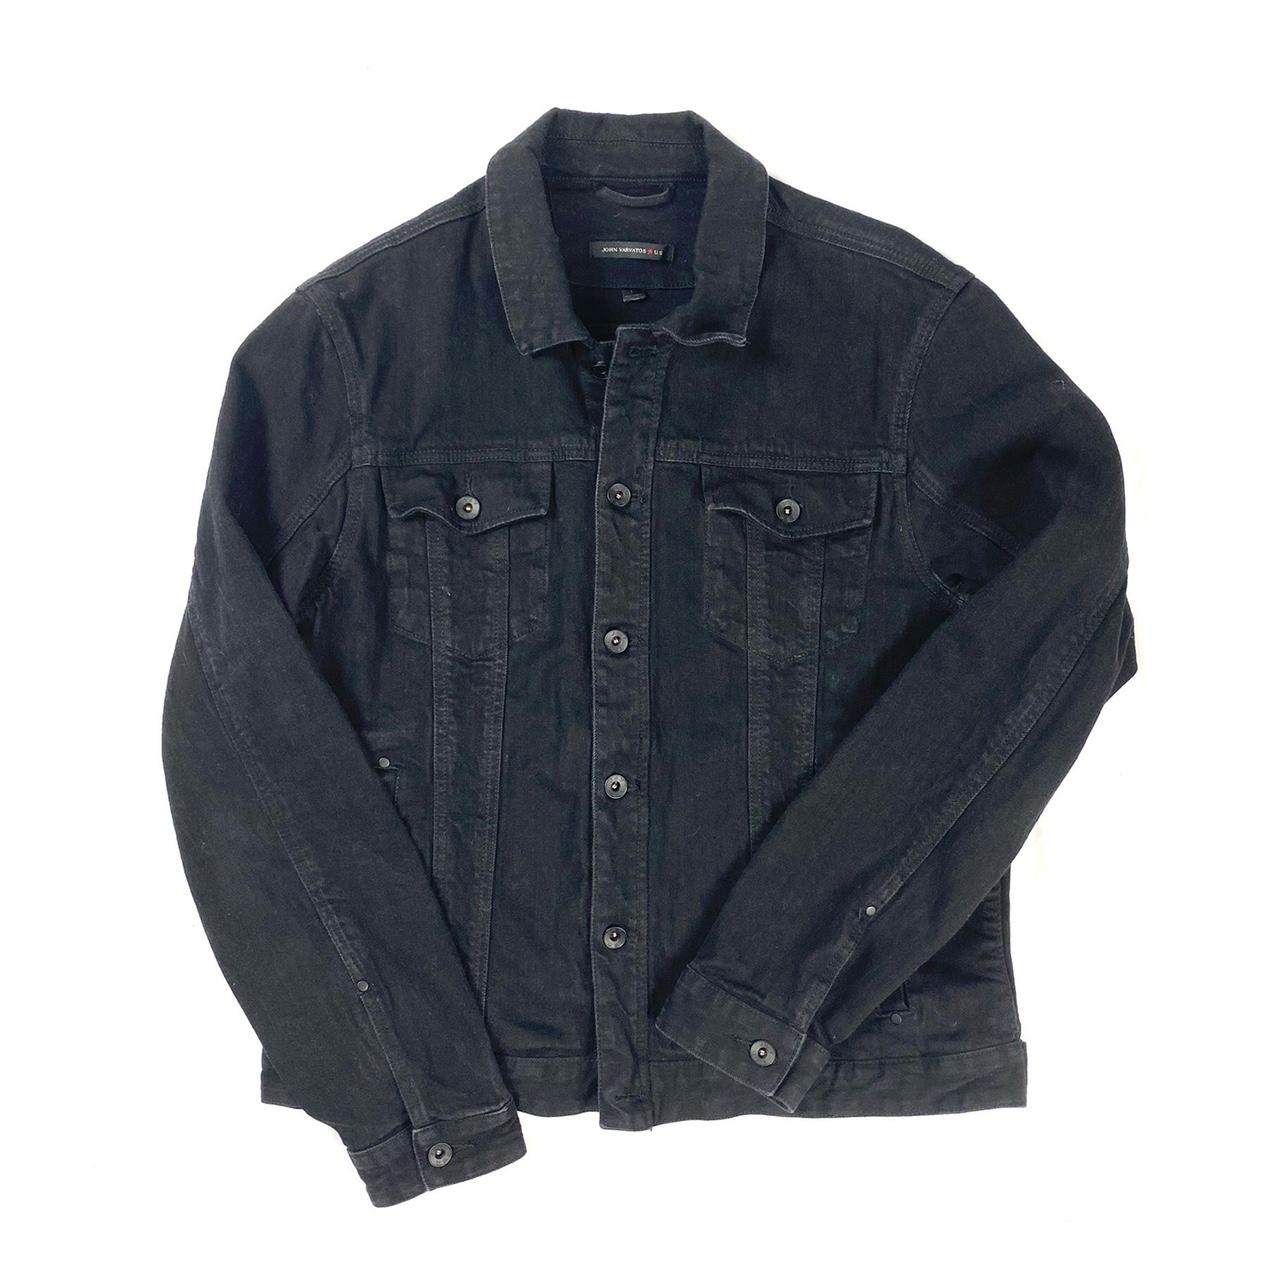 John Varvatos | Jackets & Coats | John Varvatos 44r Xxl Black Denim Jacket  Like New | Poshmark